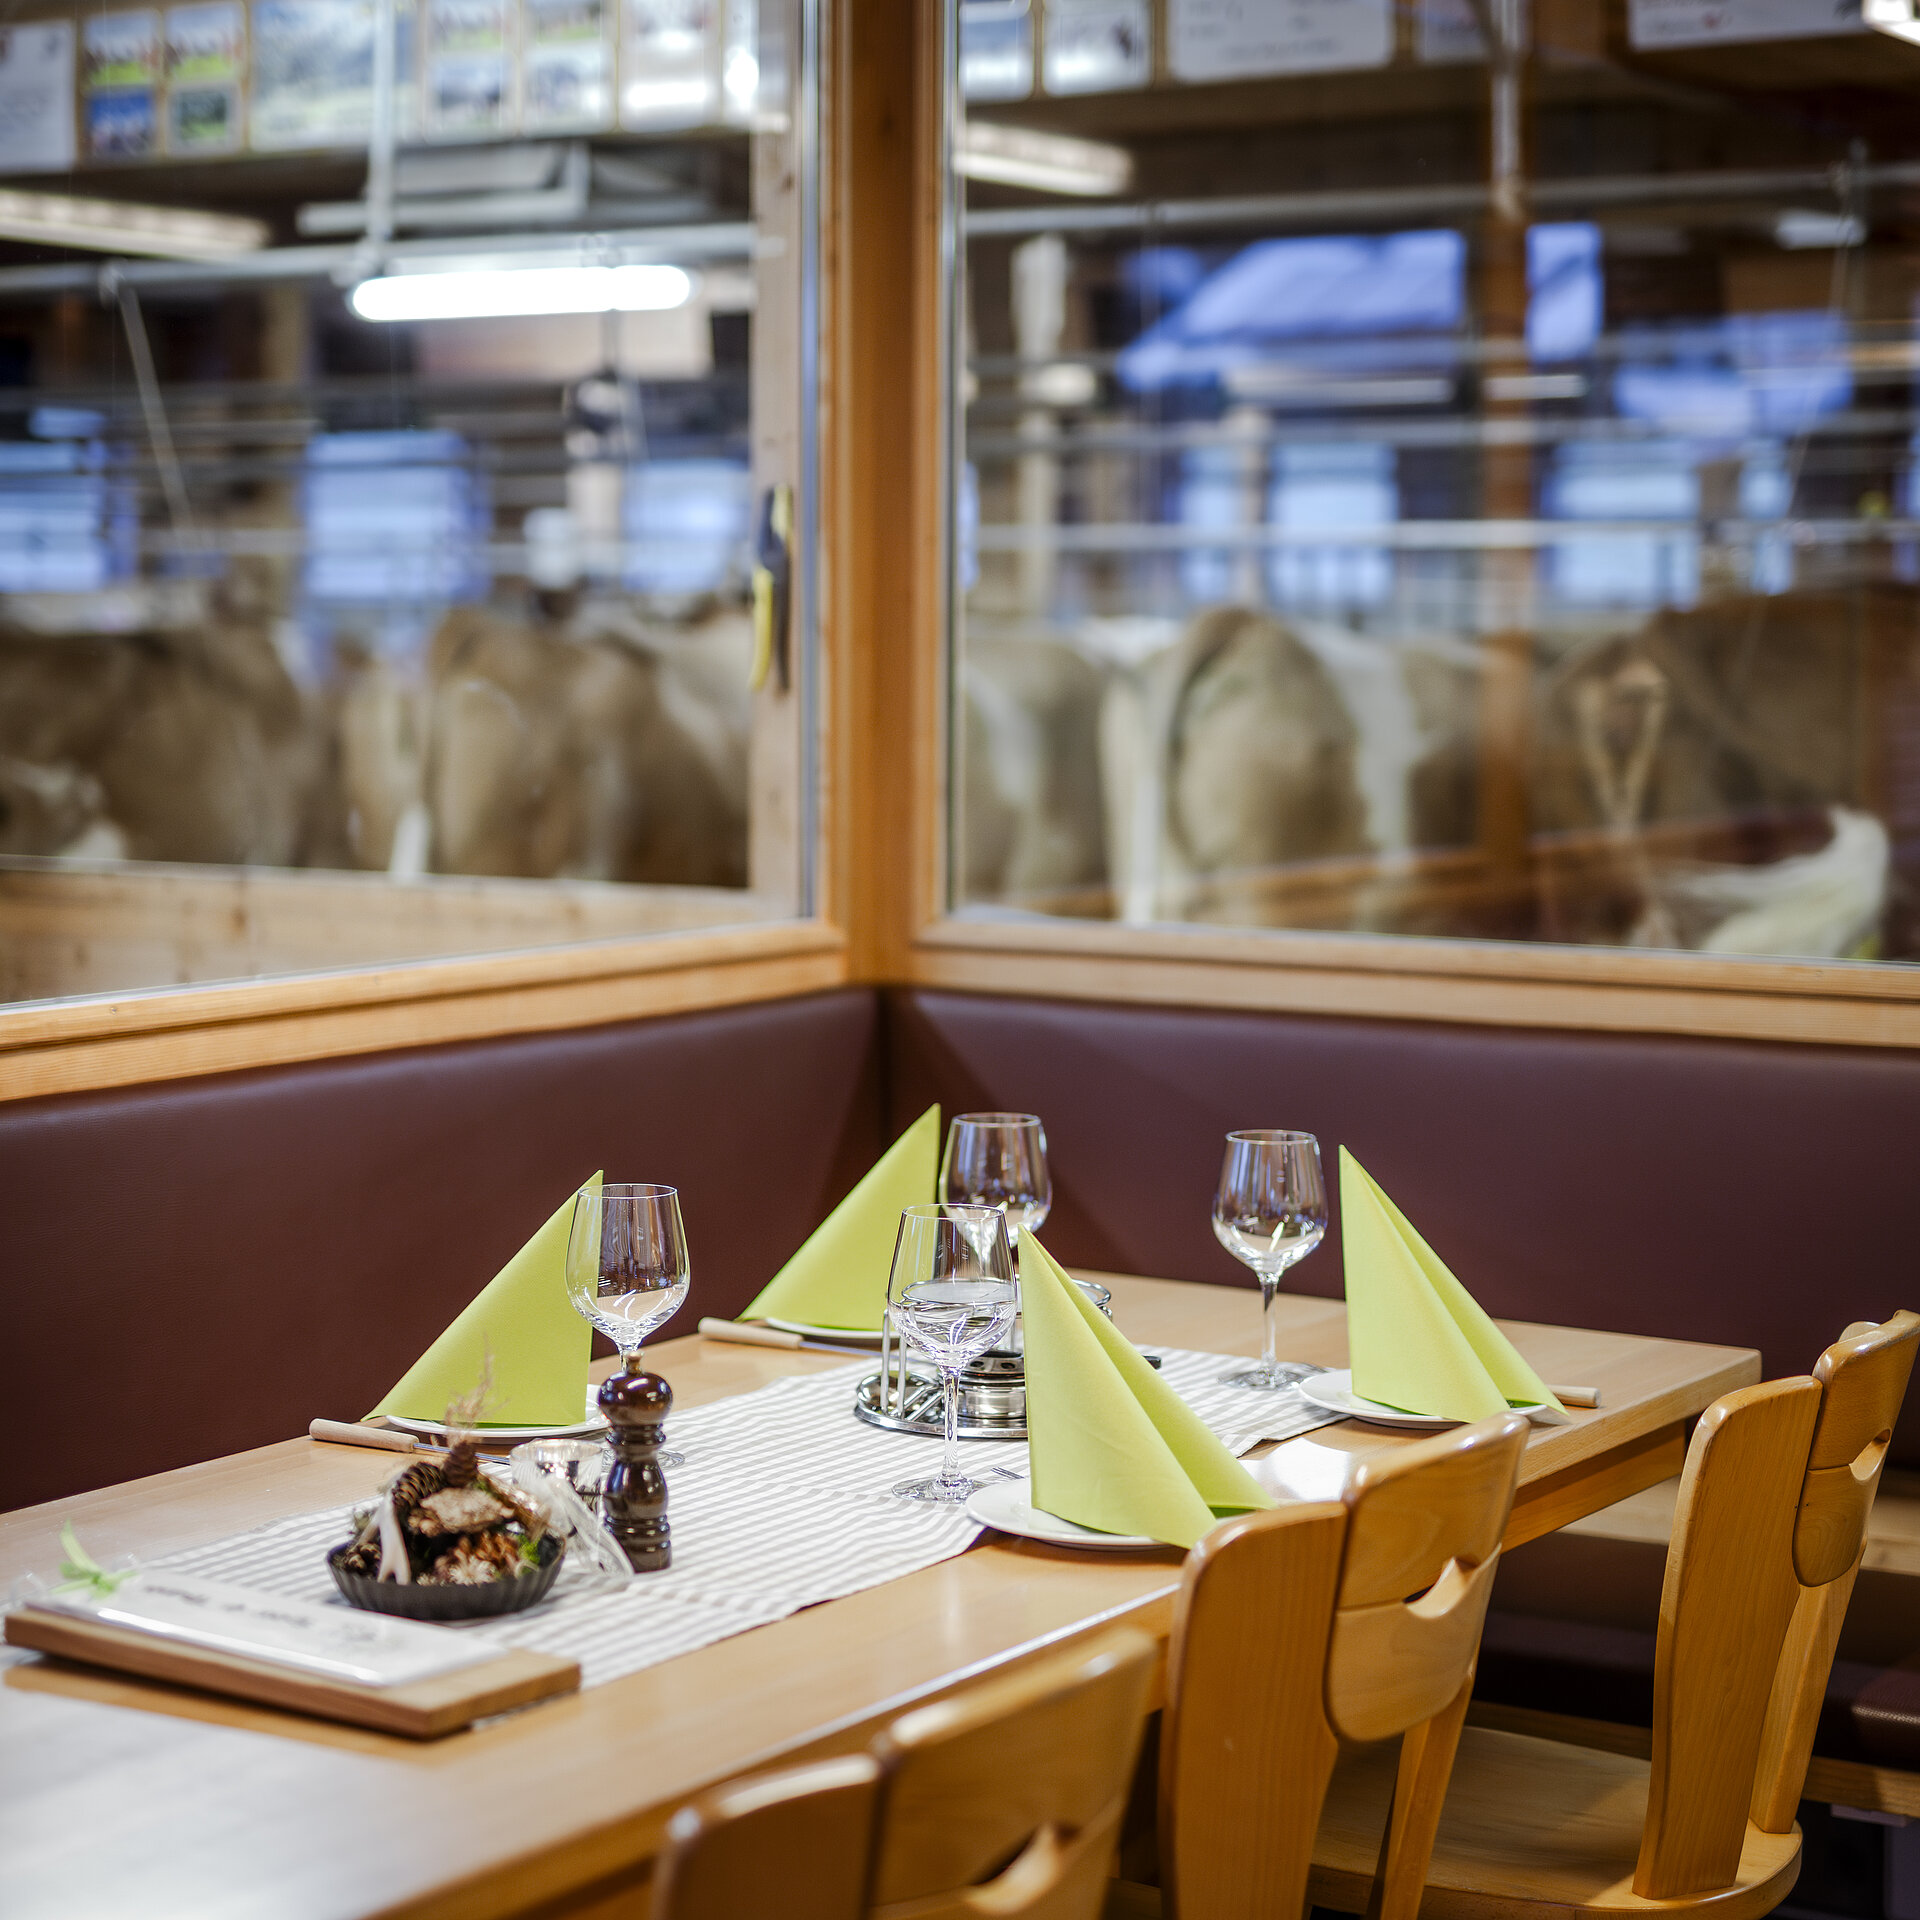 <p>Der Ecktisch in Michels Stallbeizli ist eingedeckt mit grünen Servietten, Weinglässern und Fondue-Caquelon. Neben der Eckbank stehen drei Holzstühle am Tisch und im Hintergrund kann man durch die Fensterscheibe die Kühe im Stall beobachten.</p>